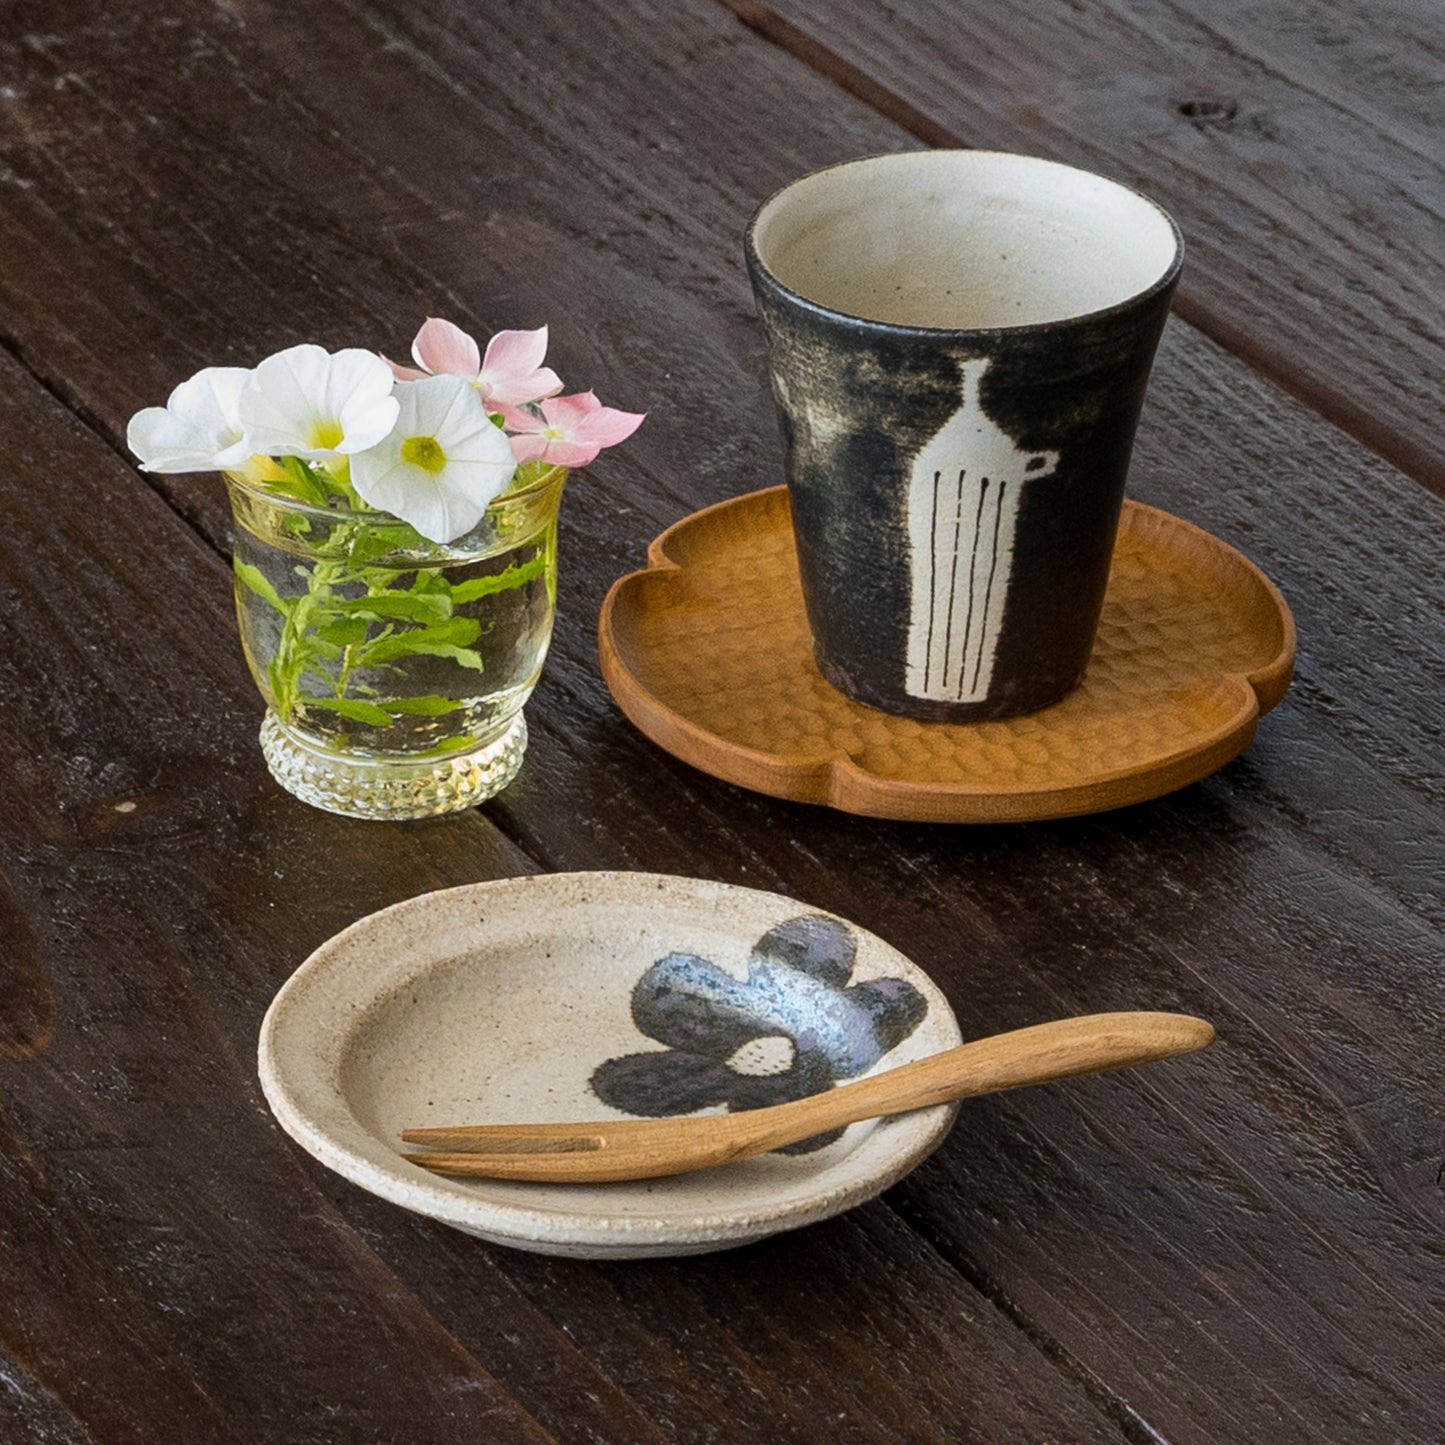 午後のほっと一息タイムをゆっくり楽しめる岡村朝子さんのミニカップとミニ丸皿